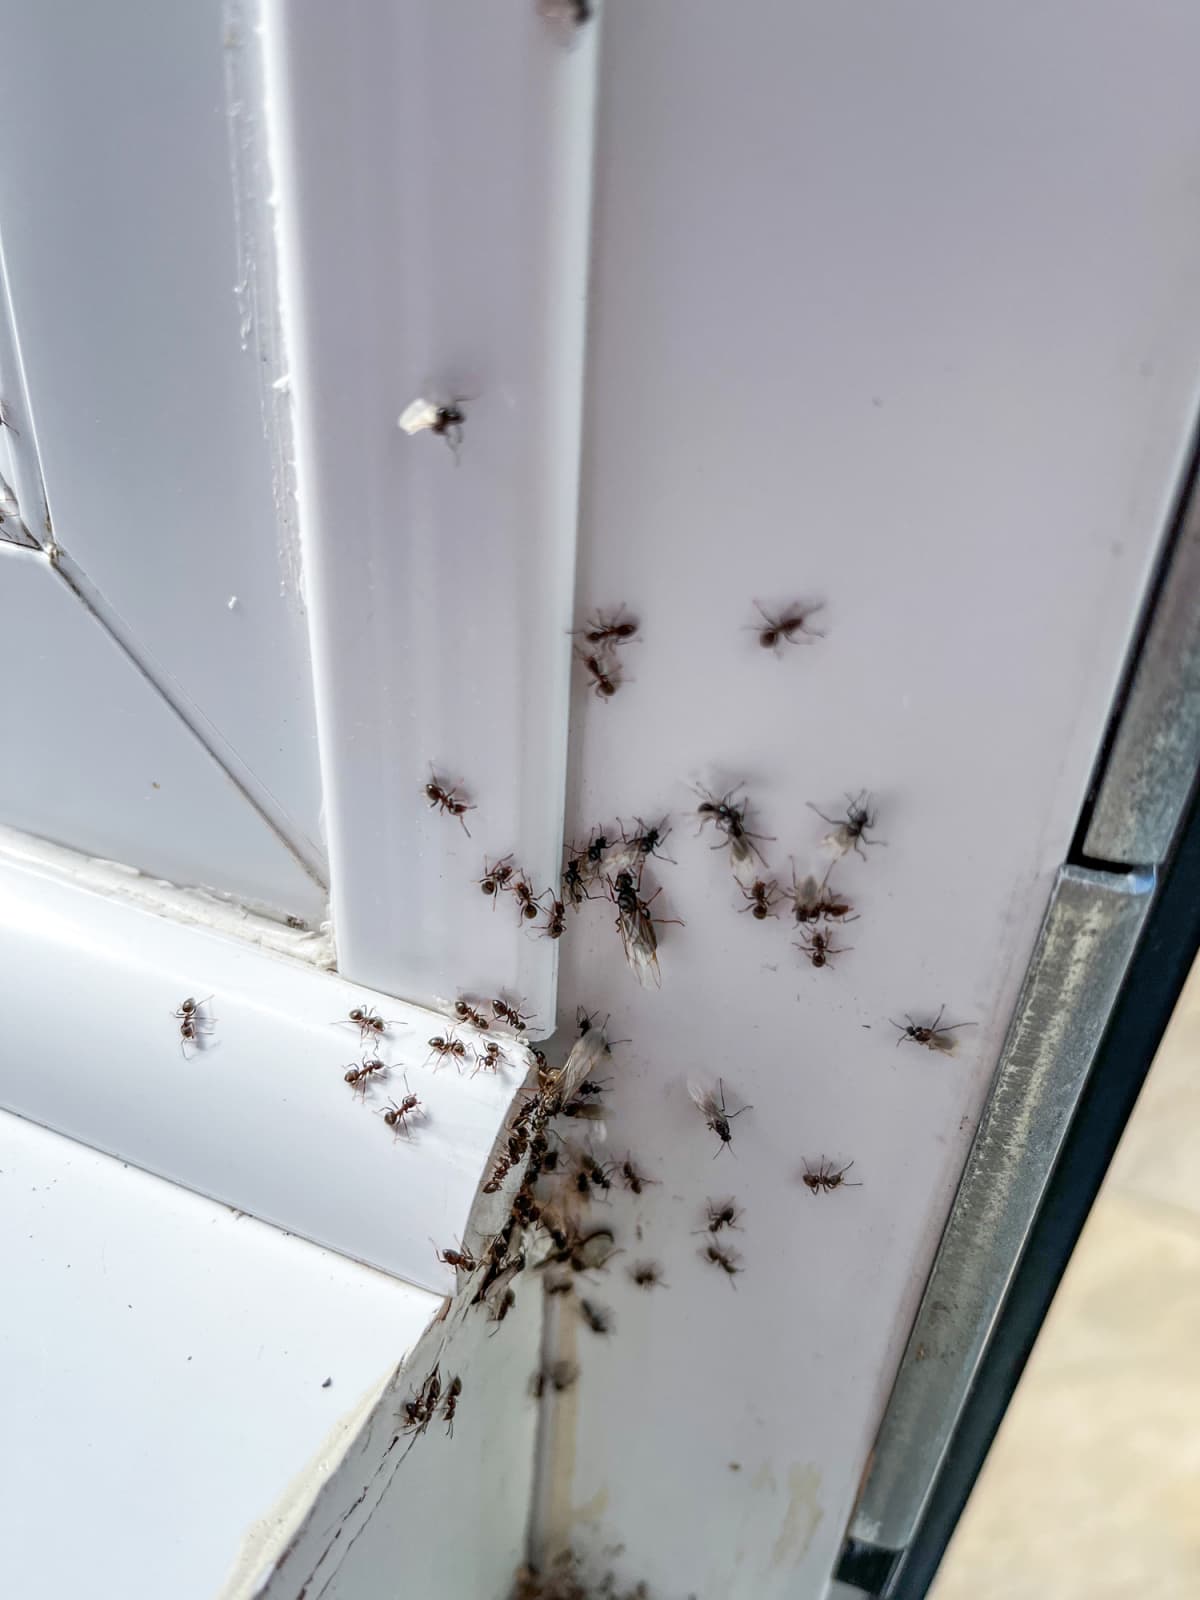 Ant infestation inside the house 